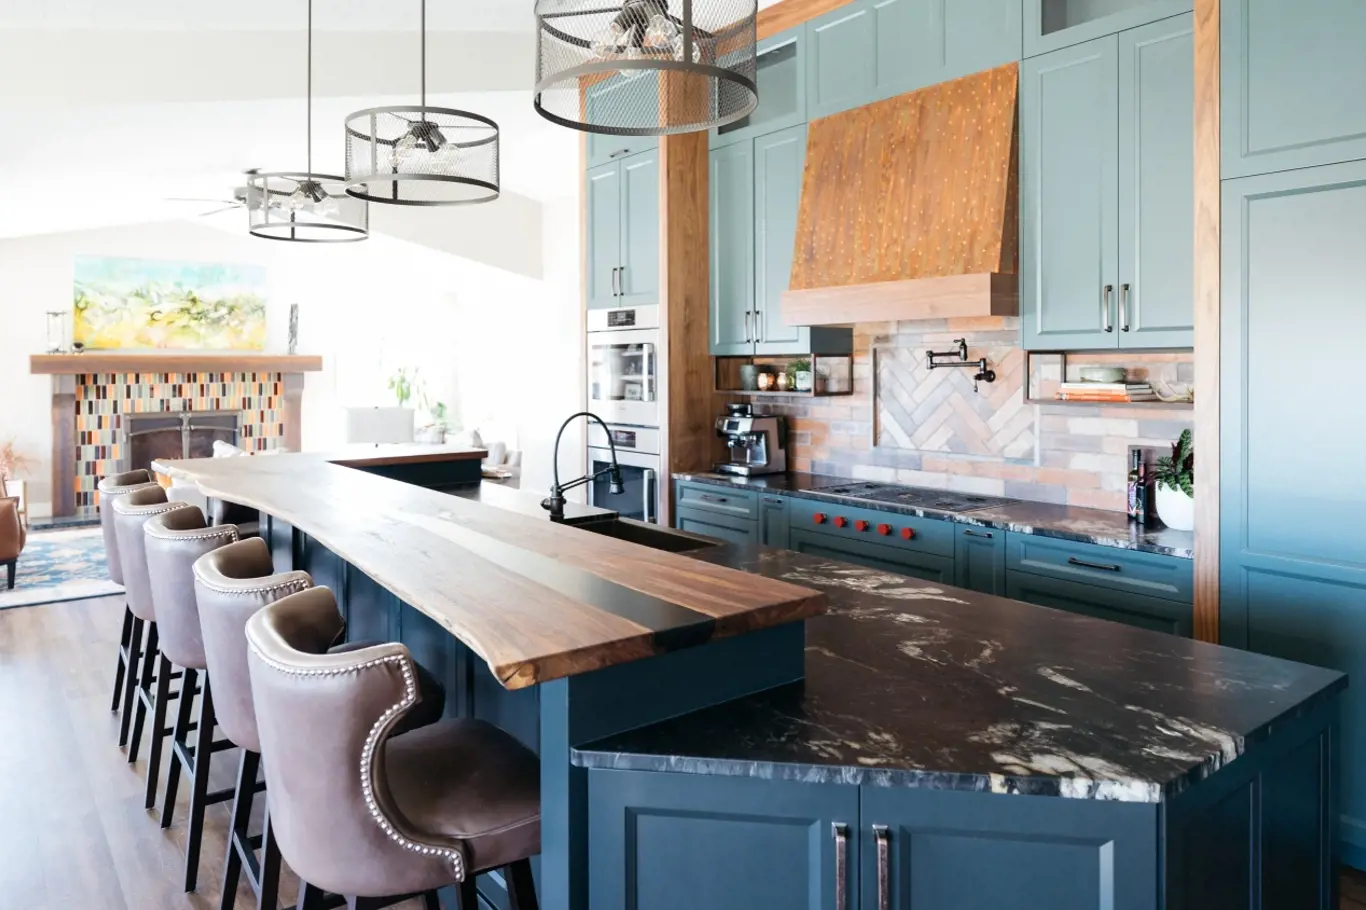 Nová kuchyně zaujme kombinací modré barvy a dřeva